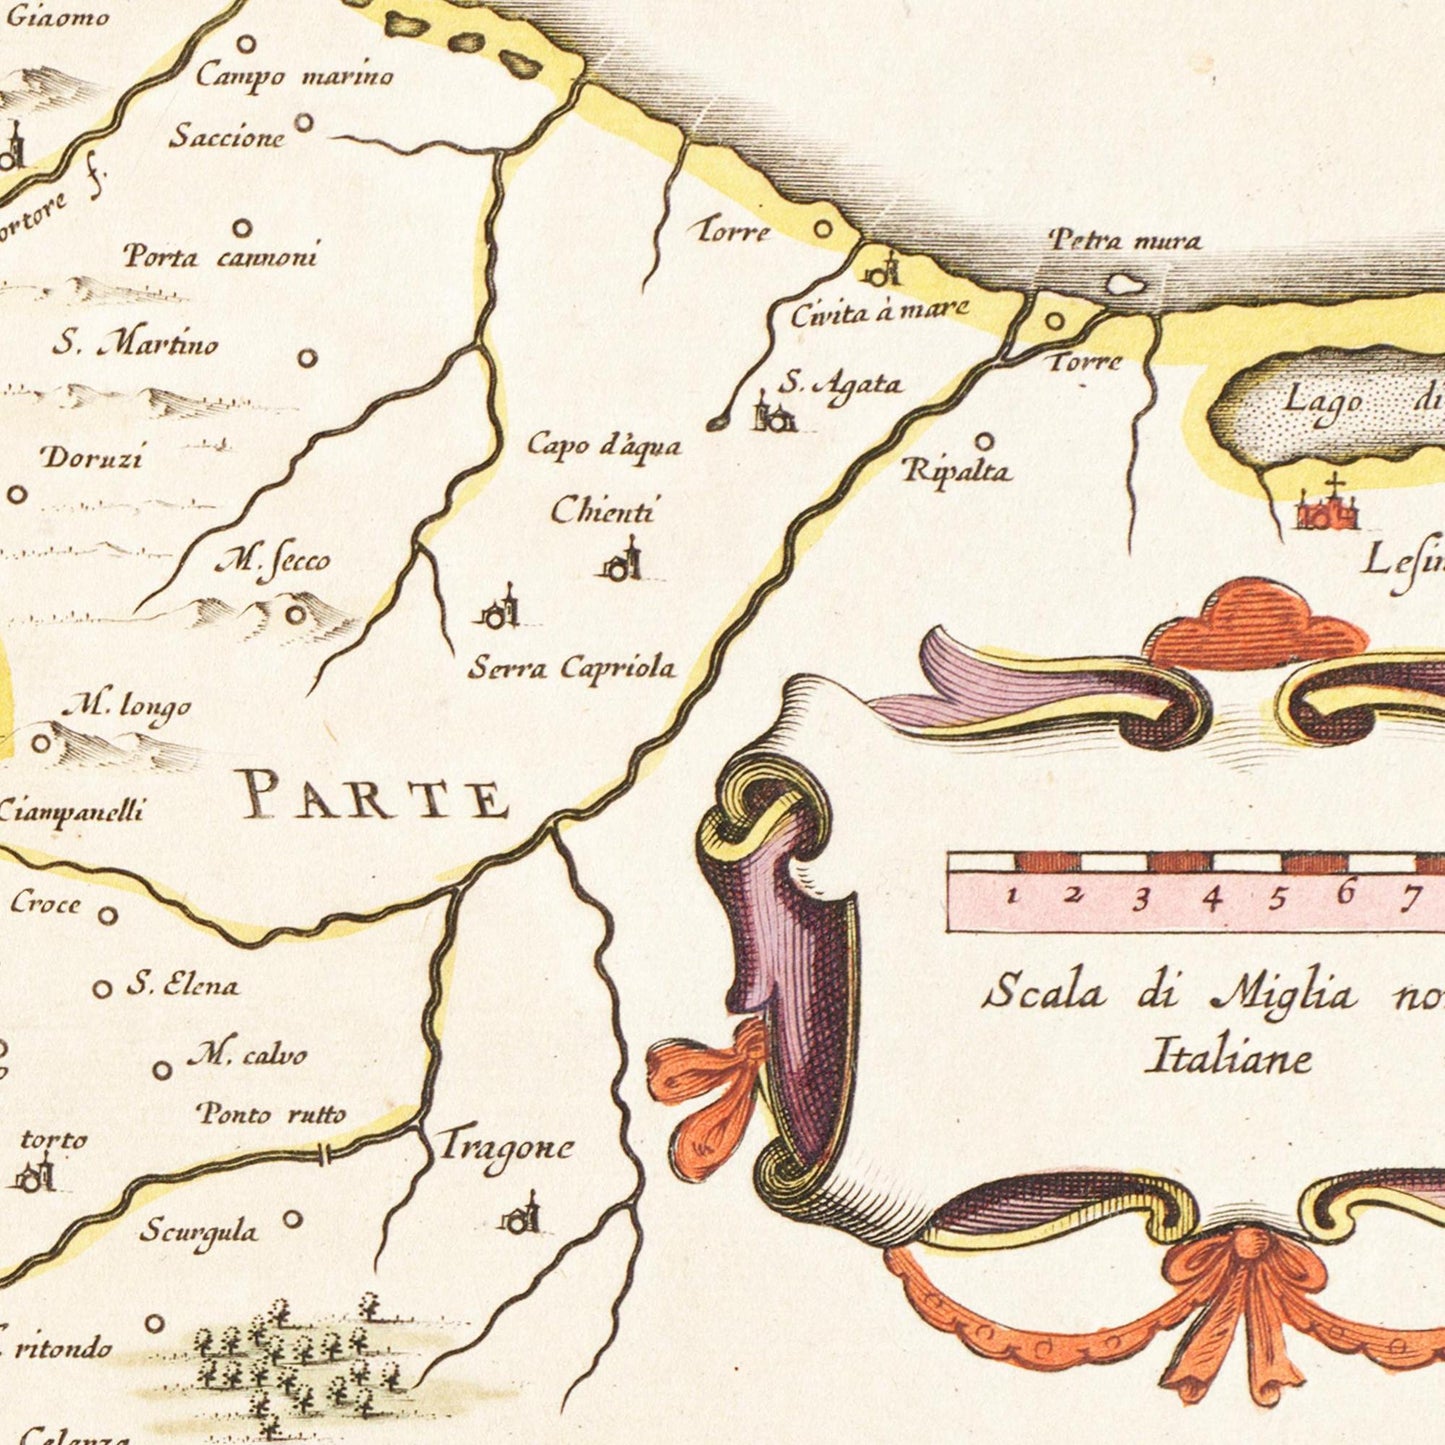 Historische Landkarte Molise um 1630